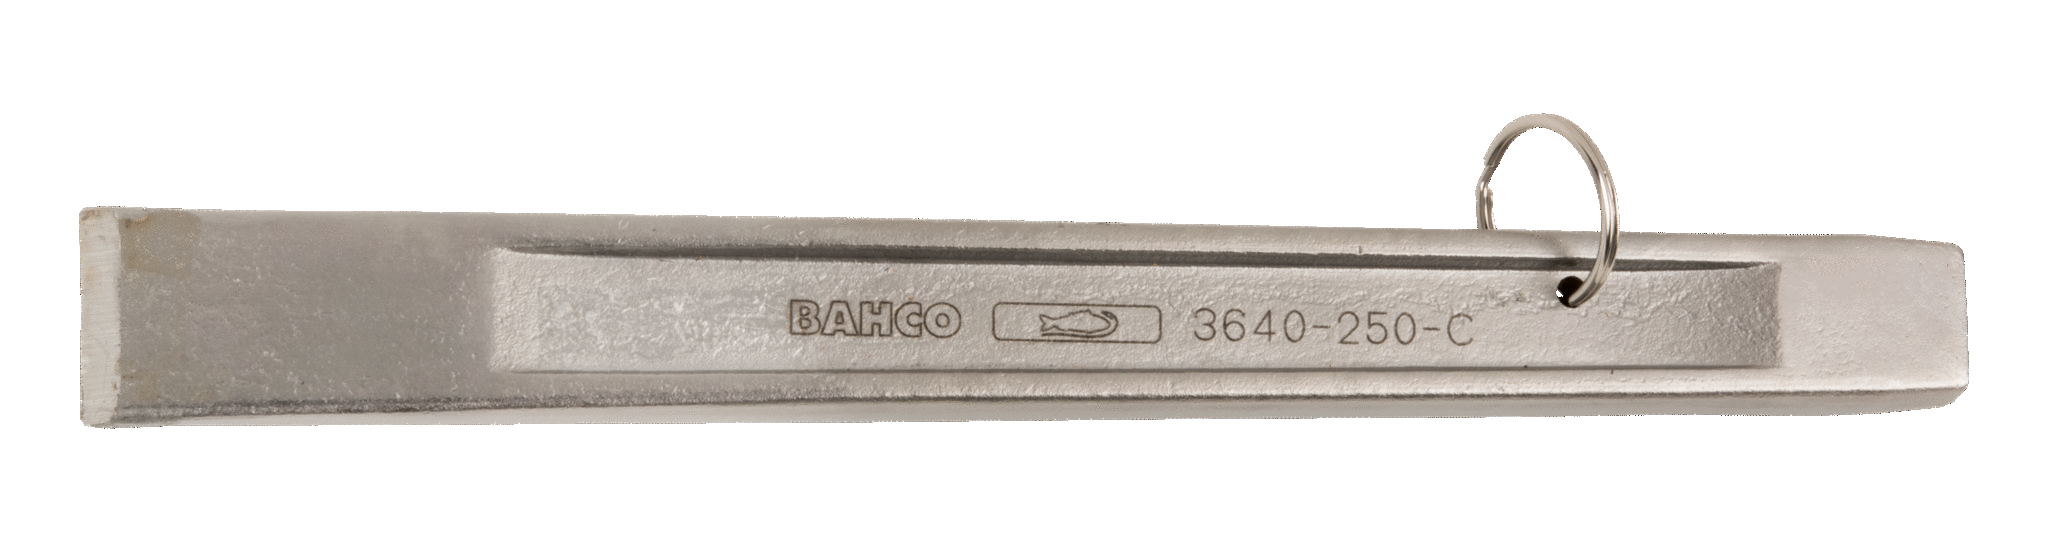 Слесарное зубило. Для работы на высоте BAHCO TAH3640-250-C